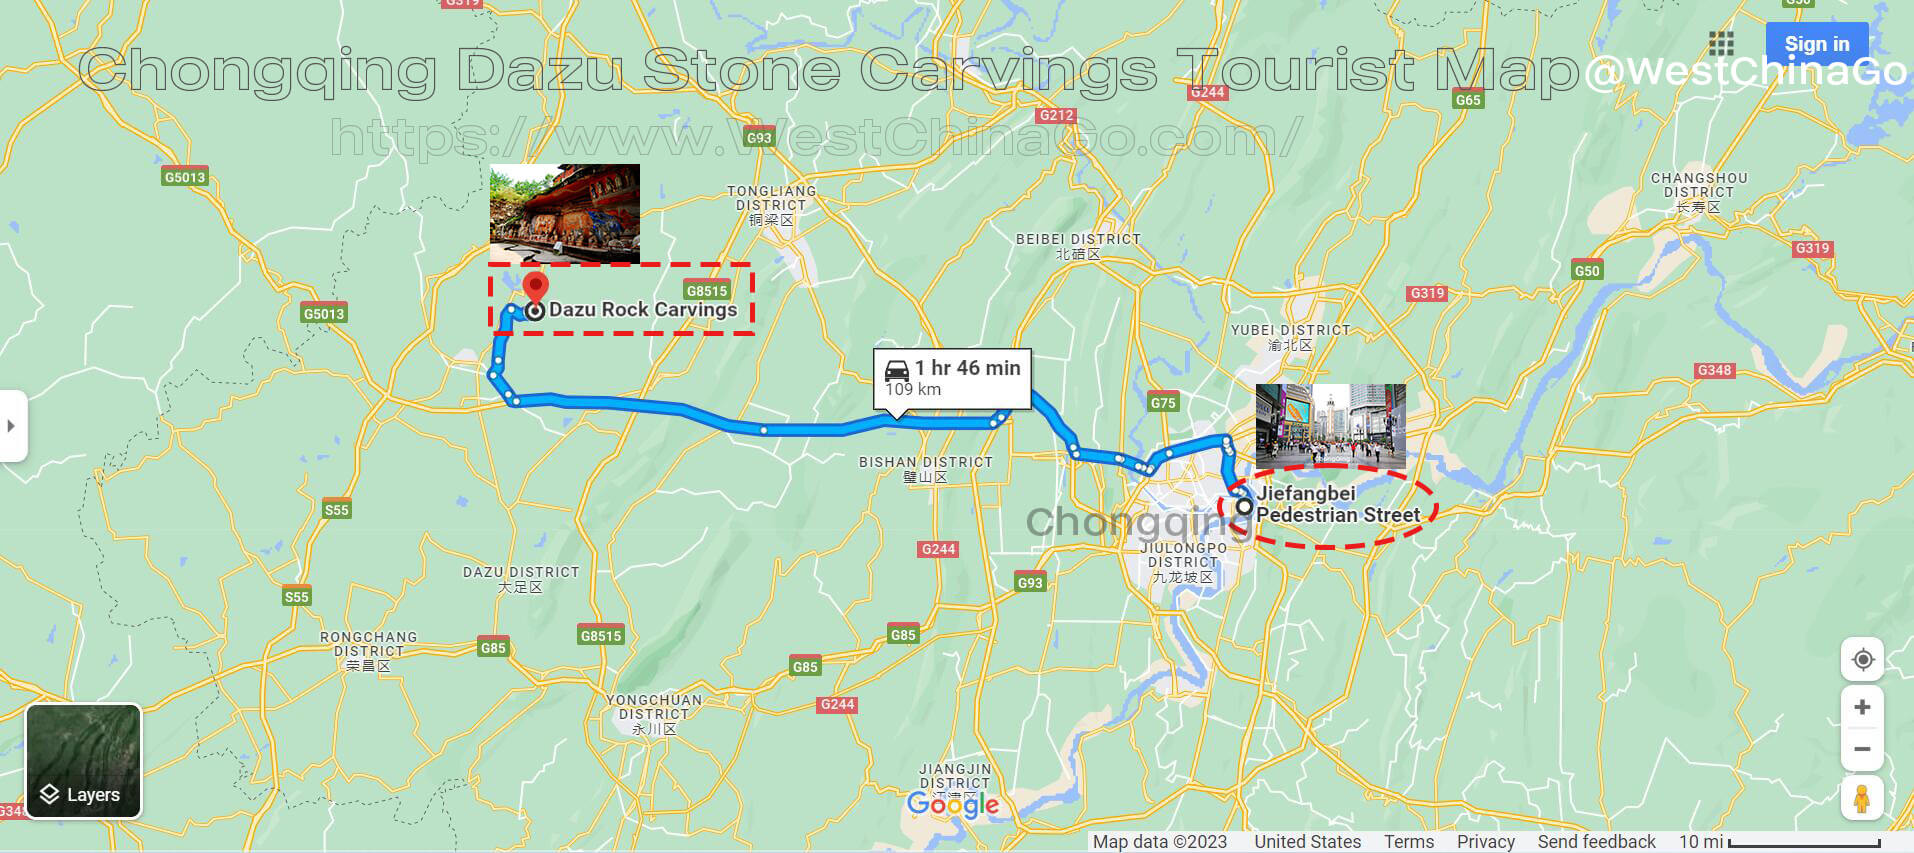 Chongqing Dazu Stone Carvings Tourist Map